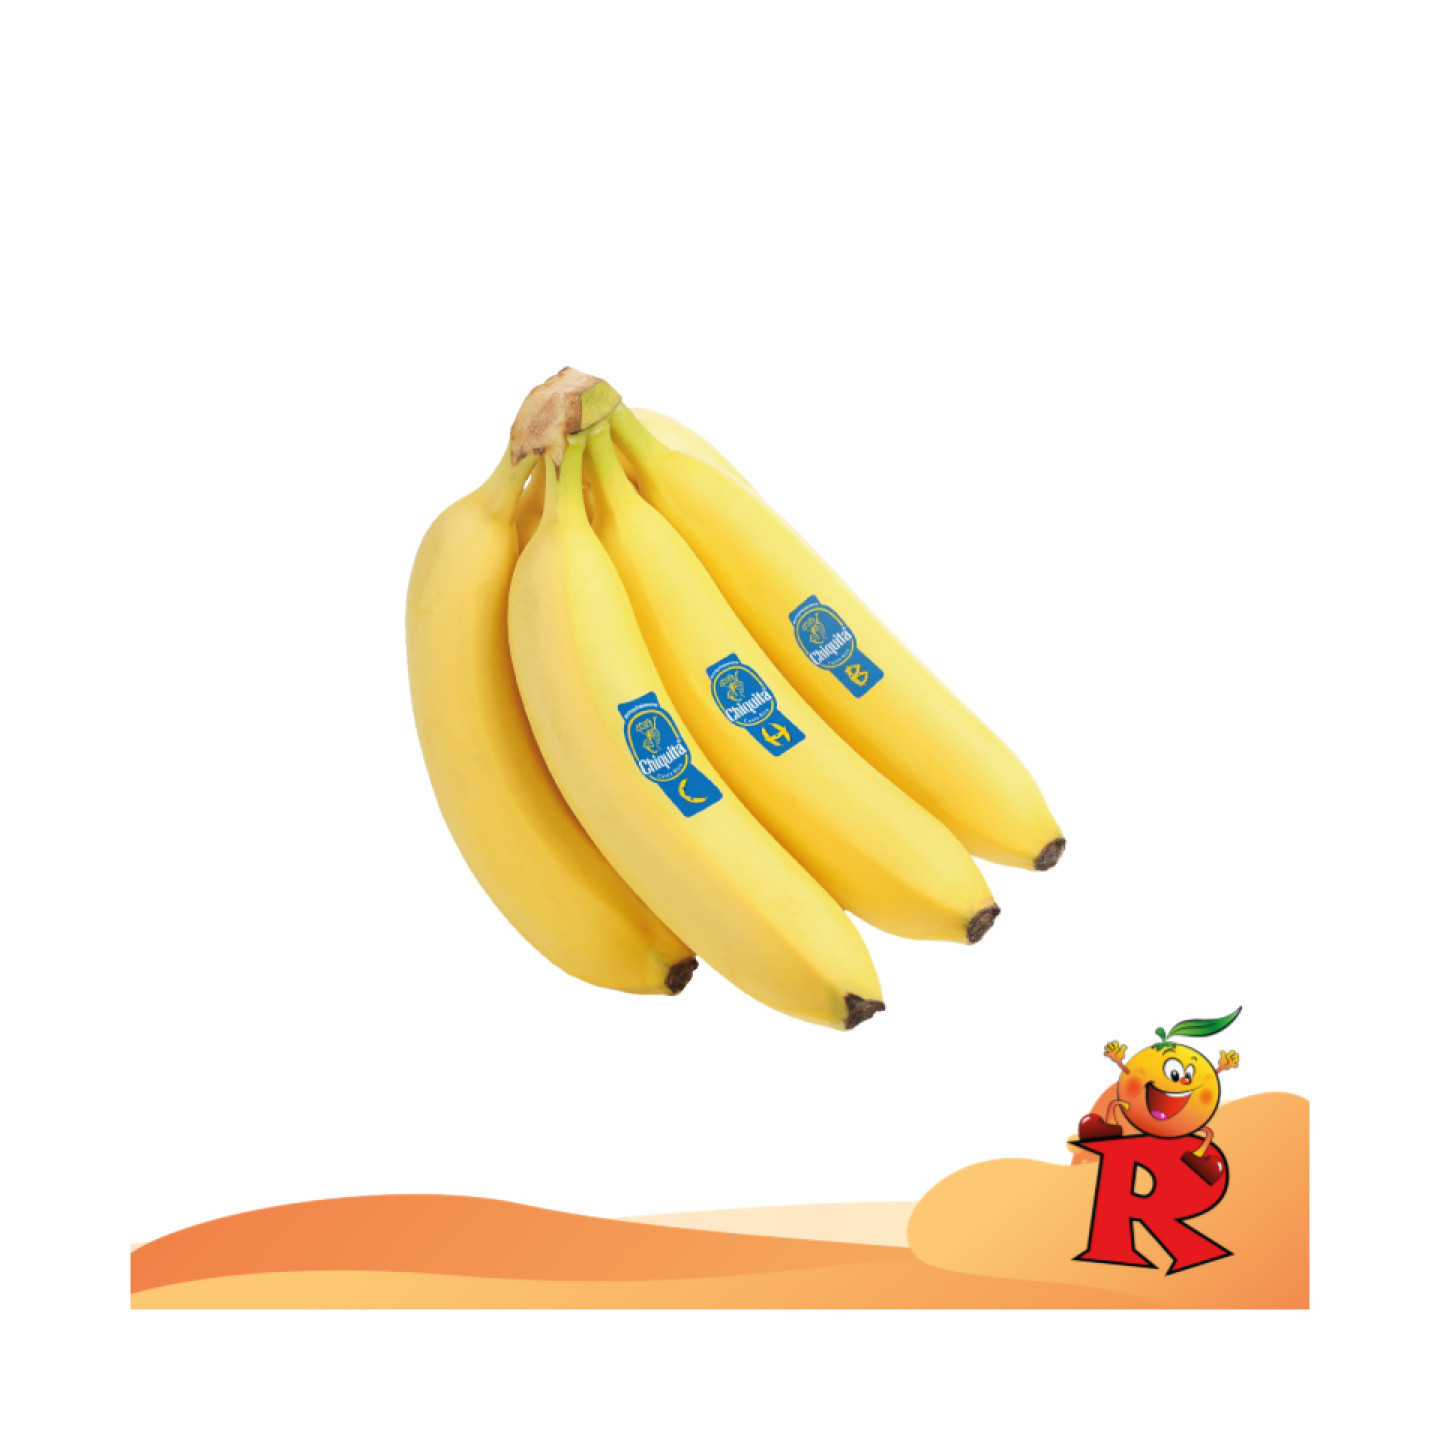 Banana Chiquita